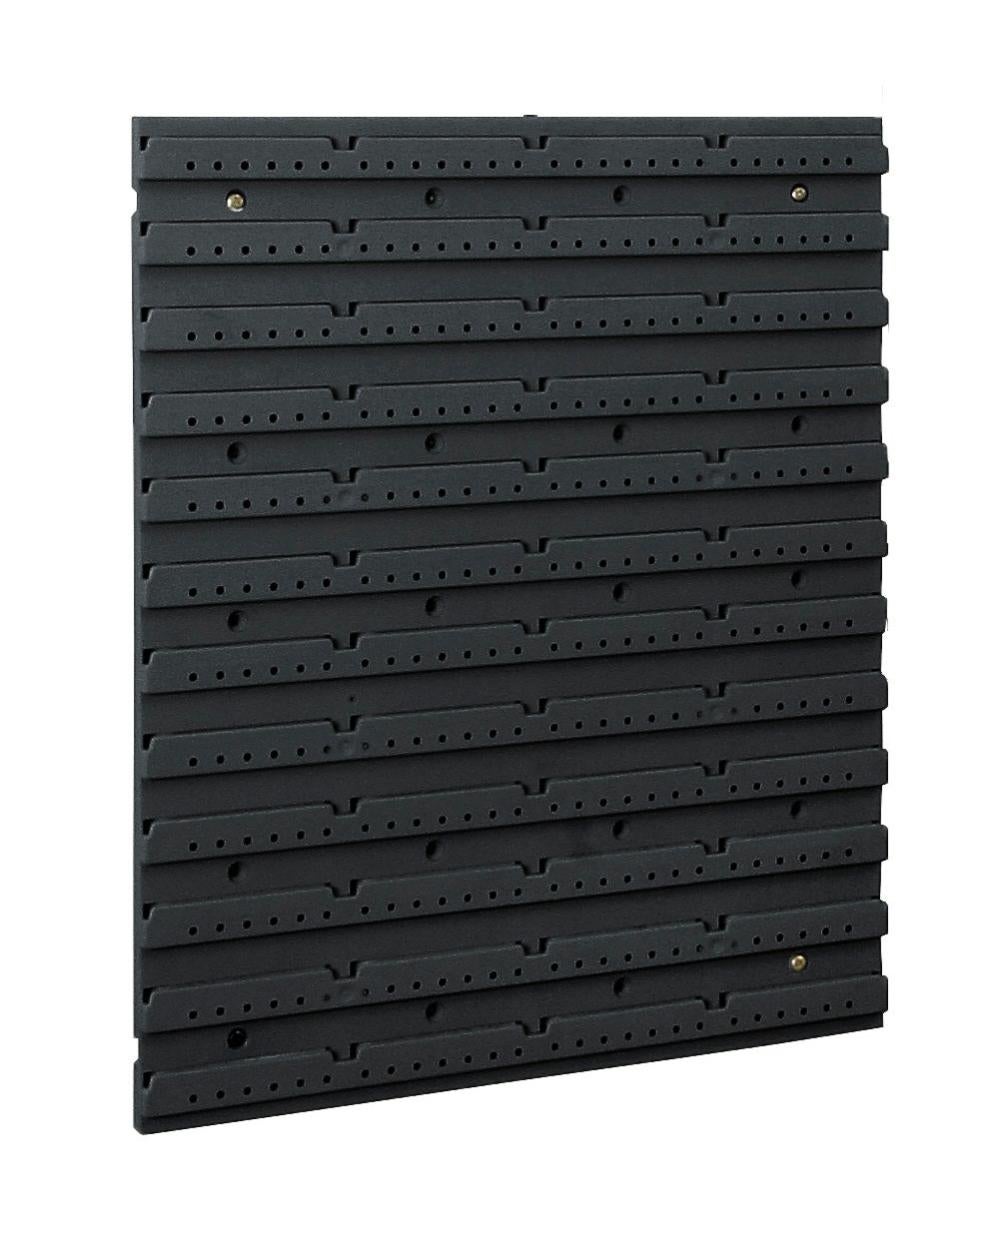 chifans Panneau de grille murale à clipser pour décoration et rangement,  3535 cm (noir)